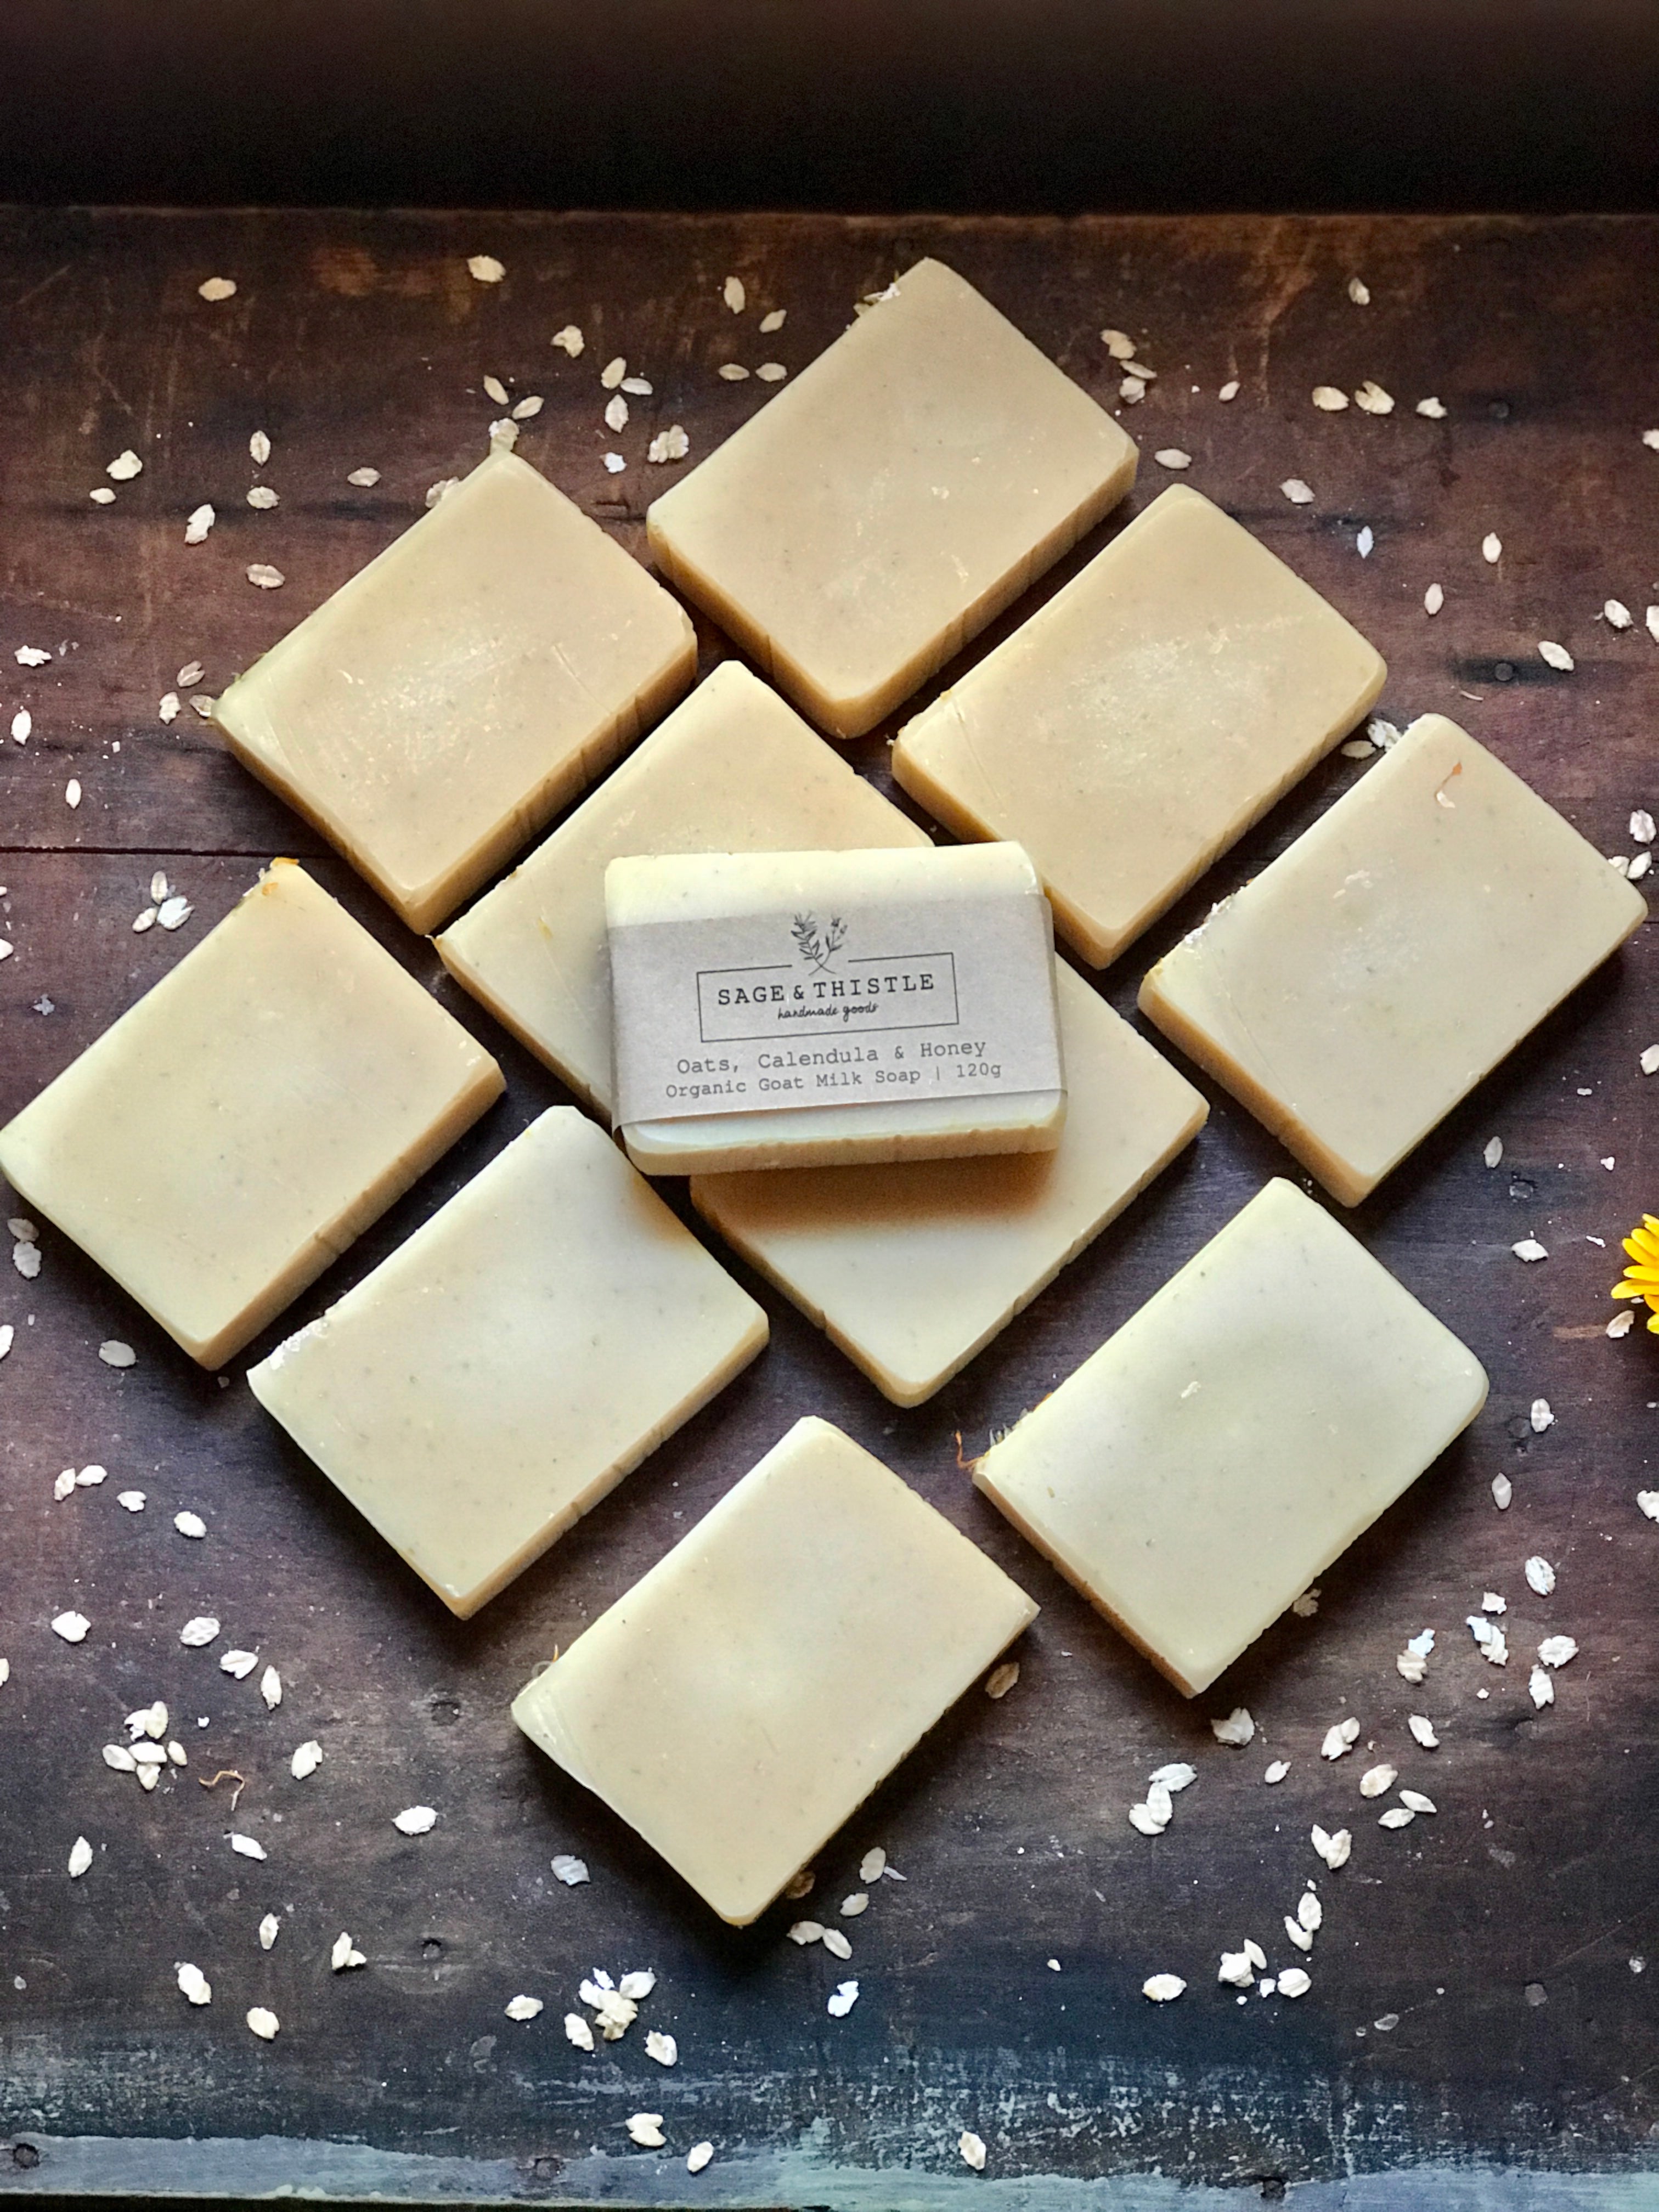 Oats, Calendula & Honey Organic Goat Milk Soap